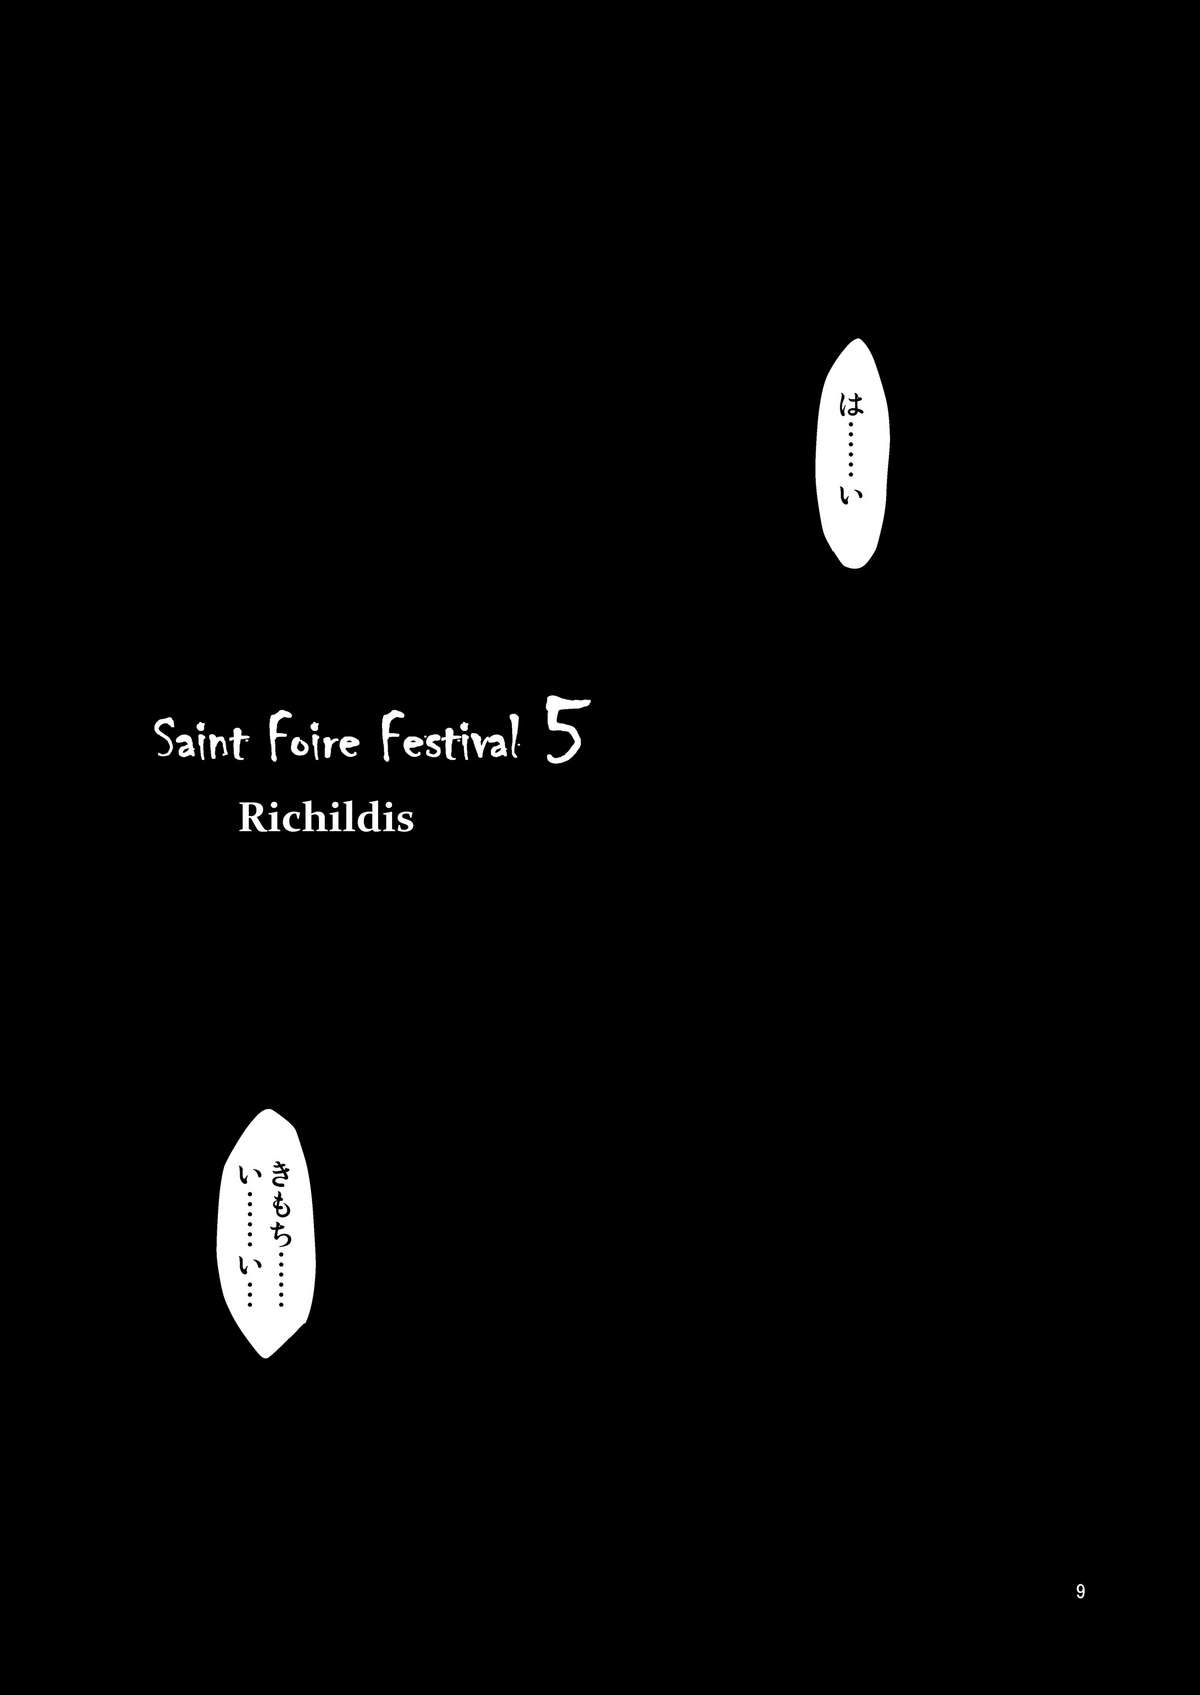 [床子屋 (HEIZO, 鬼頭えん)] Saint Foire Festival 5 [DL版]